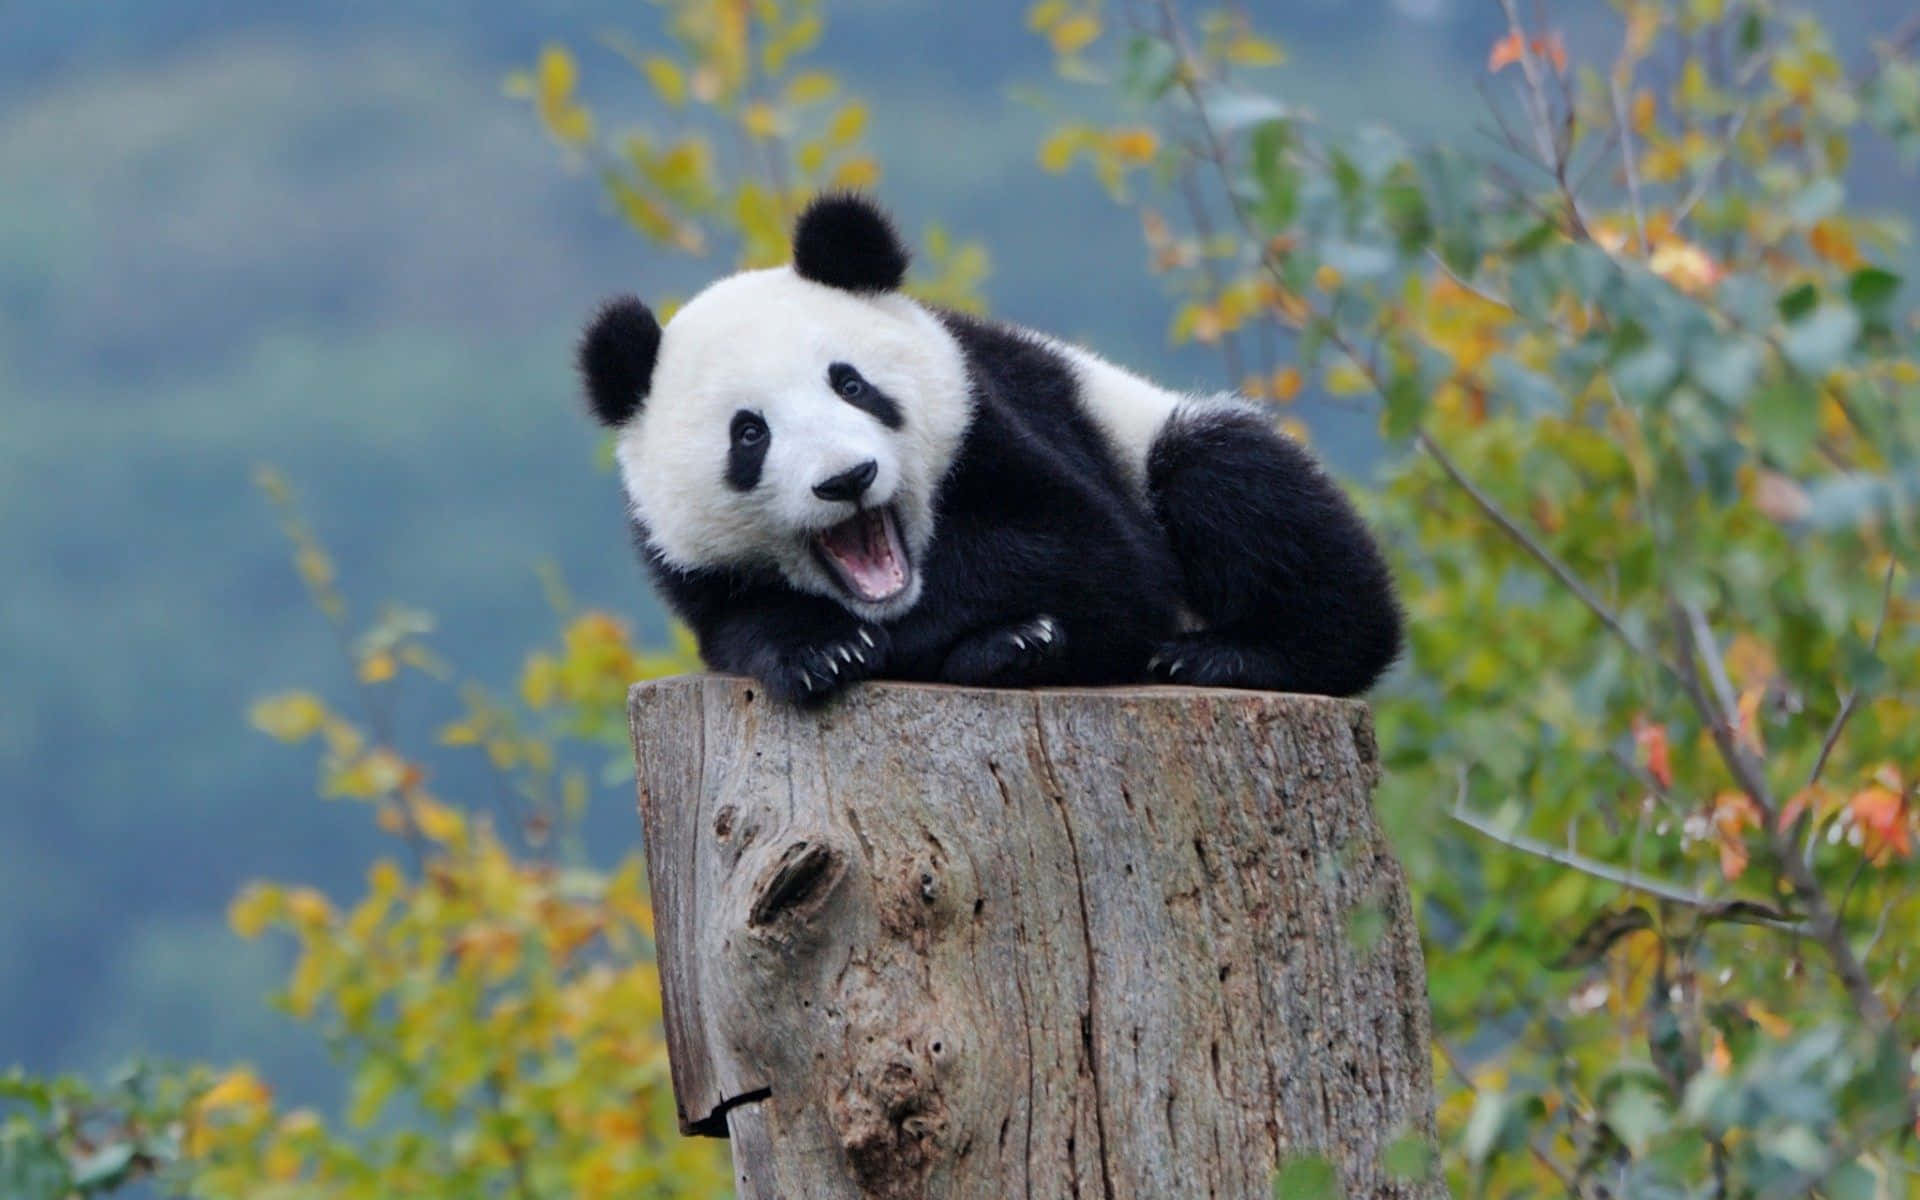 Cute Panda Bear Dreaming of Adventure